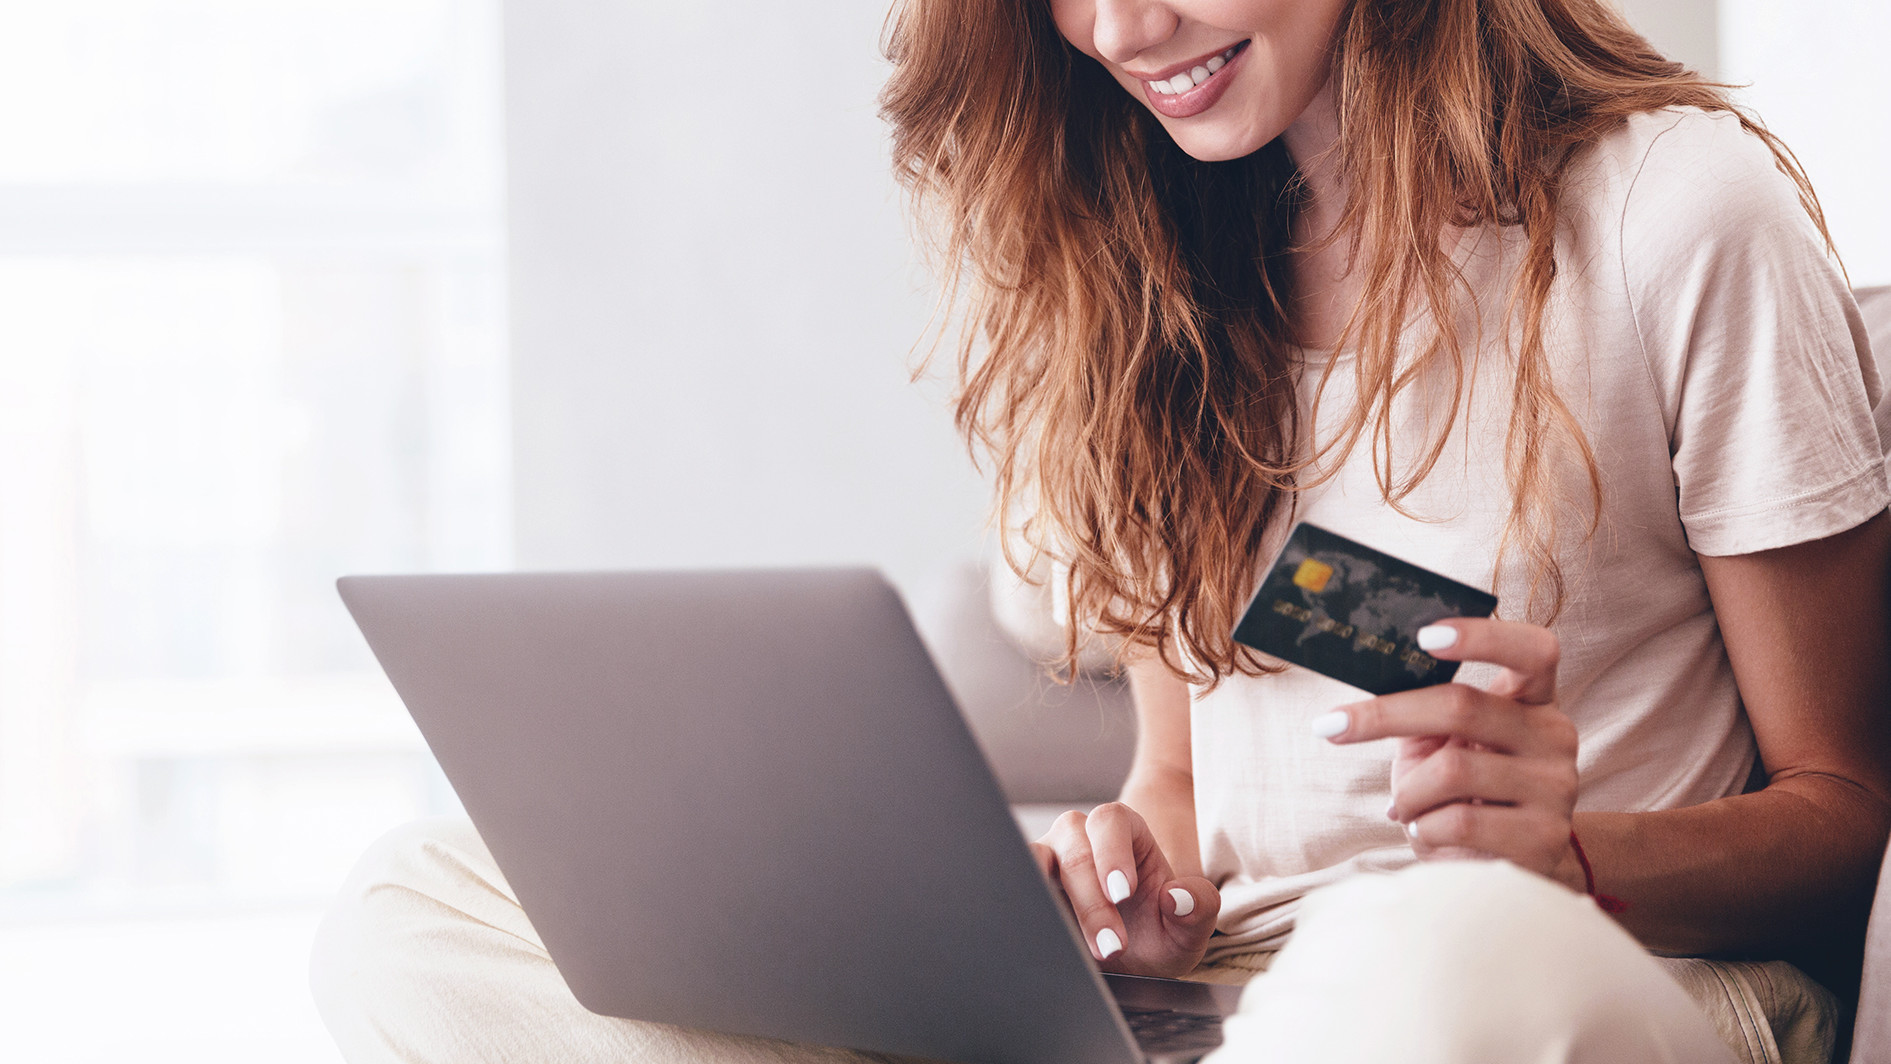 Femme procédant à un achat en ligne avec sa carte de crédit en main